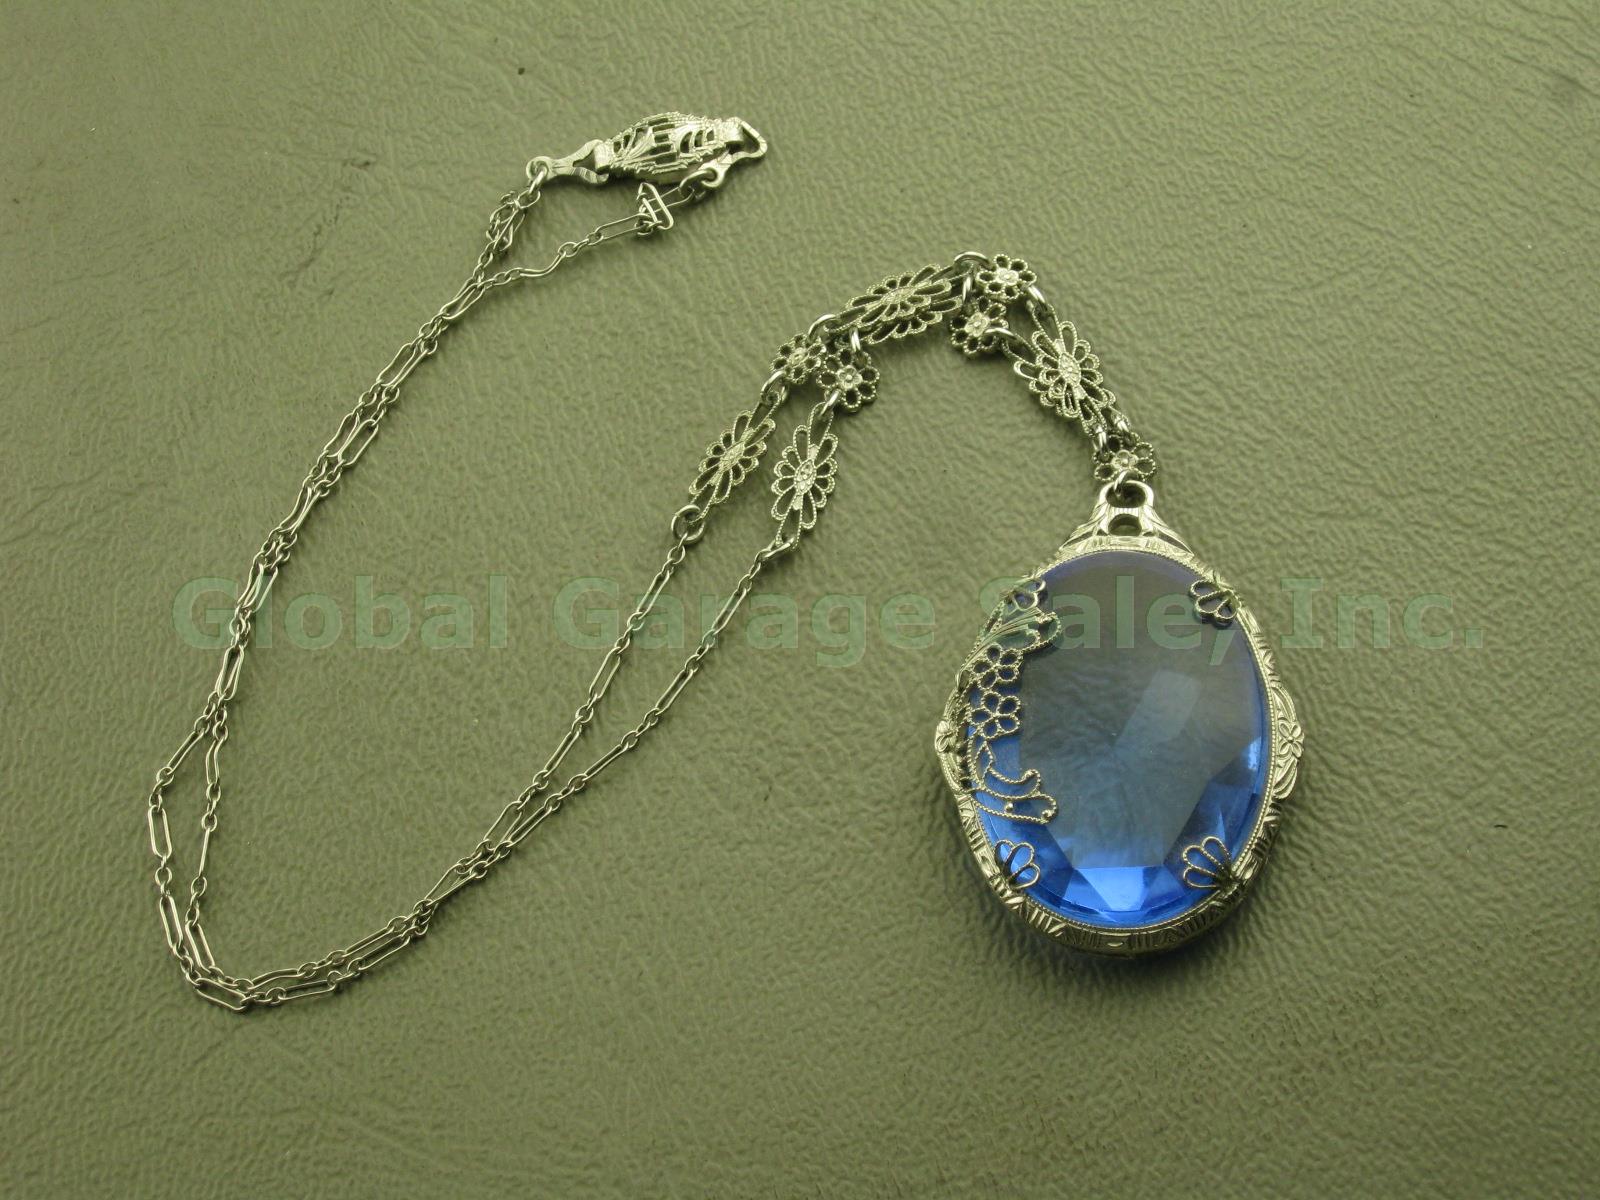 Vtg Antique JHP JH Peckham Art Deco Filigree Blue Glass Pendant Chain Necklace